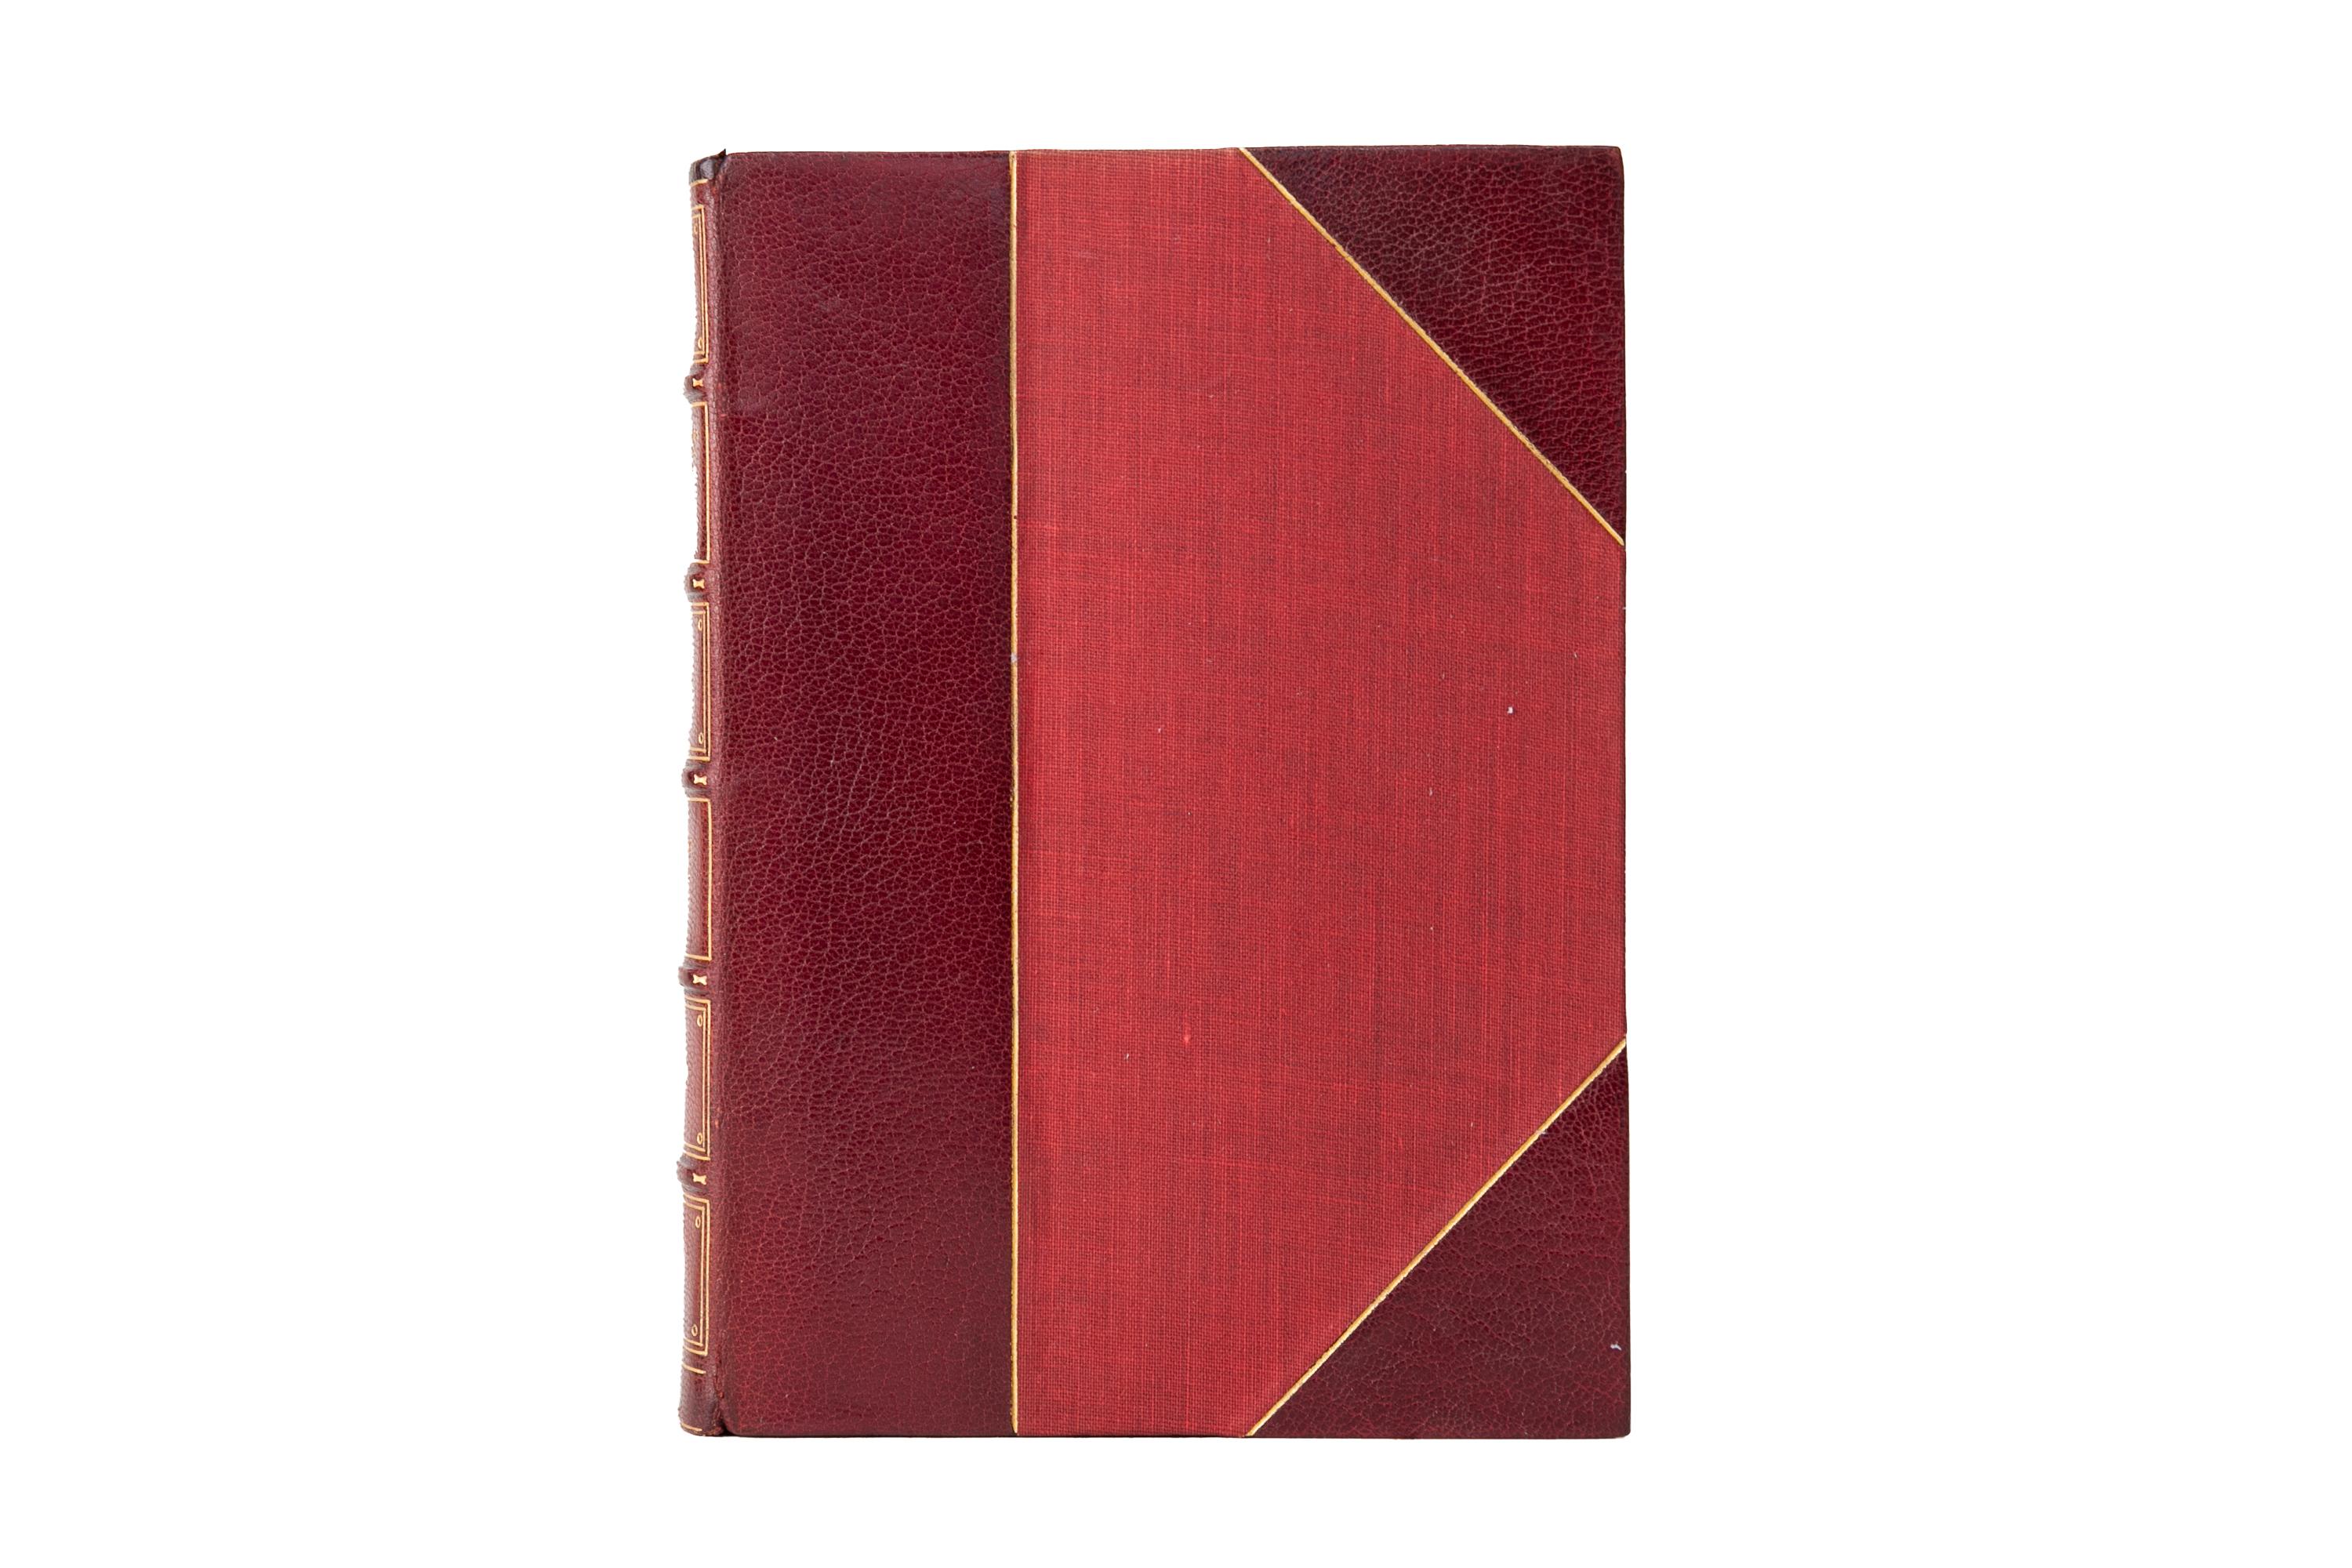 38 volumes. Charles Dickens, The Works. Édition Gadshill. Relié par Bayntun en 3/4 de maroquin rouge et planches de lin bordées de dorures. Dos à bandes en relief avec des détails dorés. Les tranches supérieures sont dorées et les pages de garde